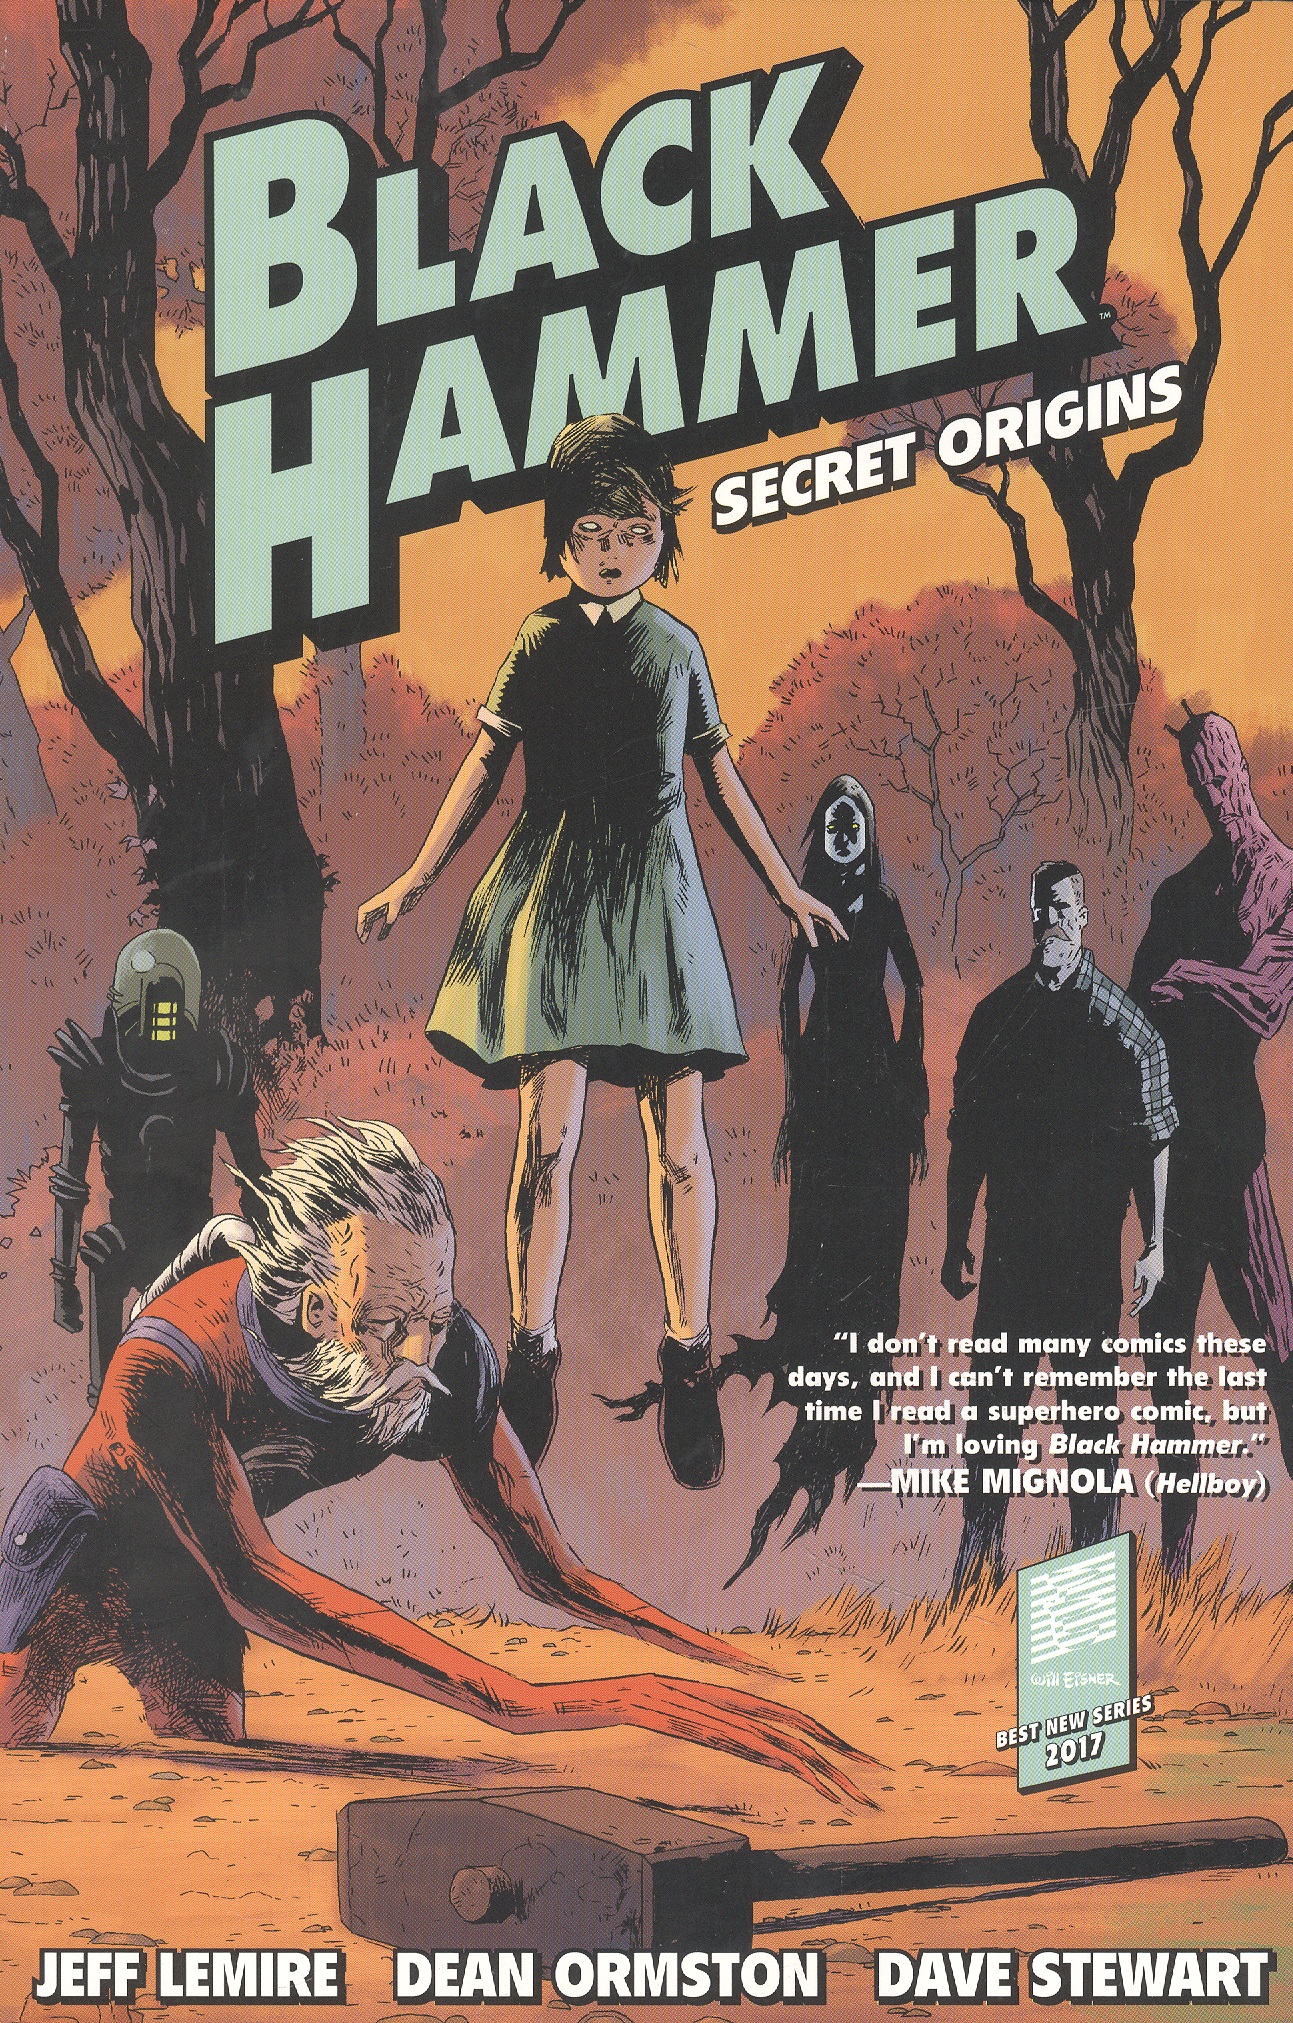 Лемир Джефф Black Hammer: Secret Origins